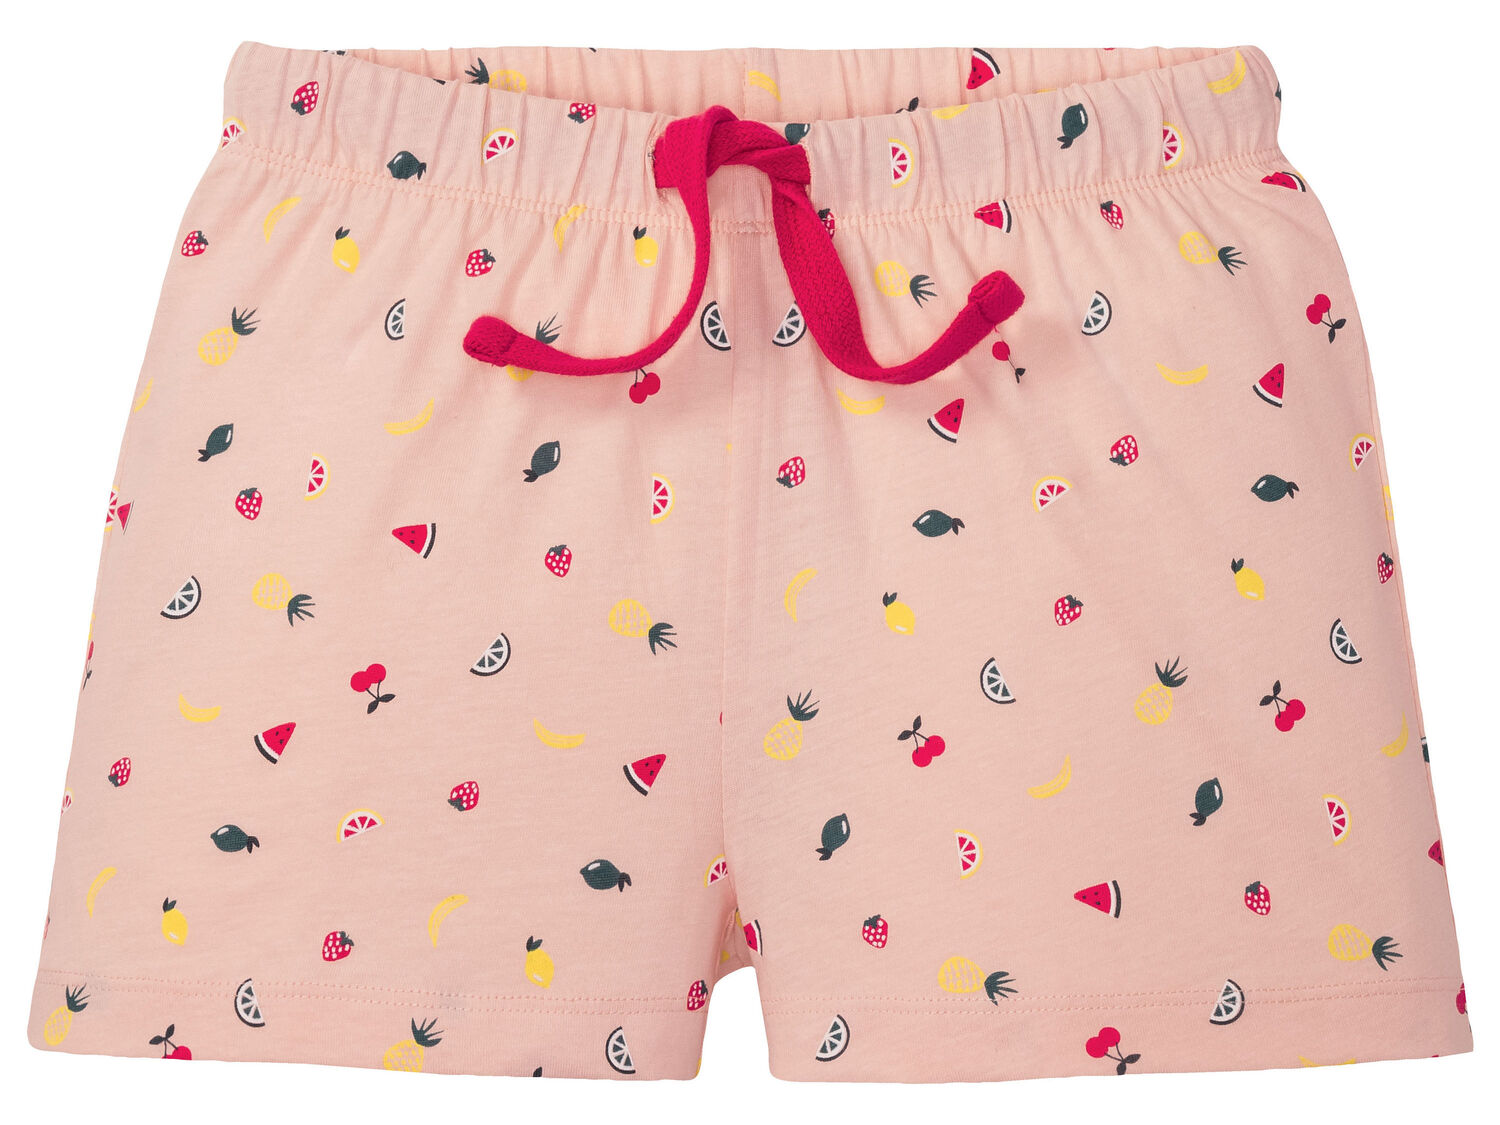 Piżama dziewczęca Pepperts, cena 16,99 PLN 
- rozmiary: 134-176
- 100% bawełny
Dostępne ...